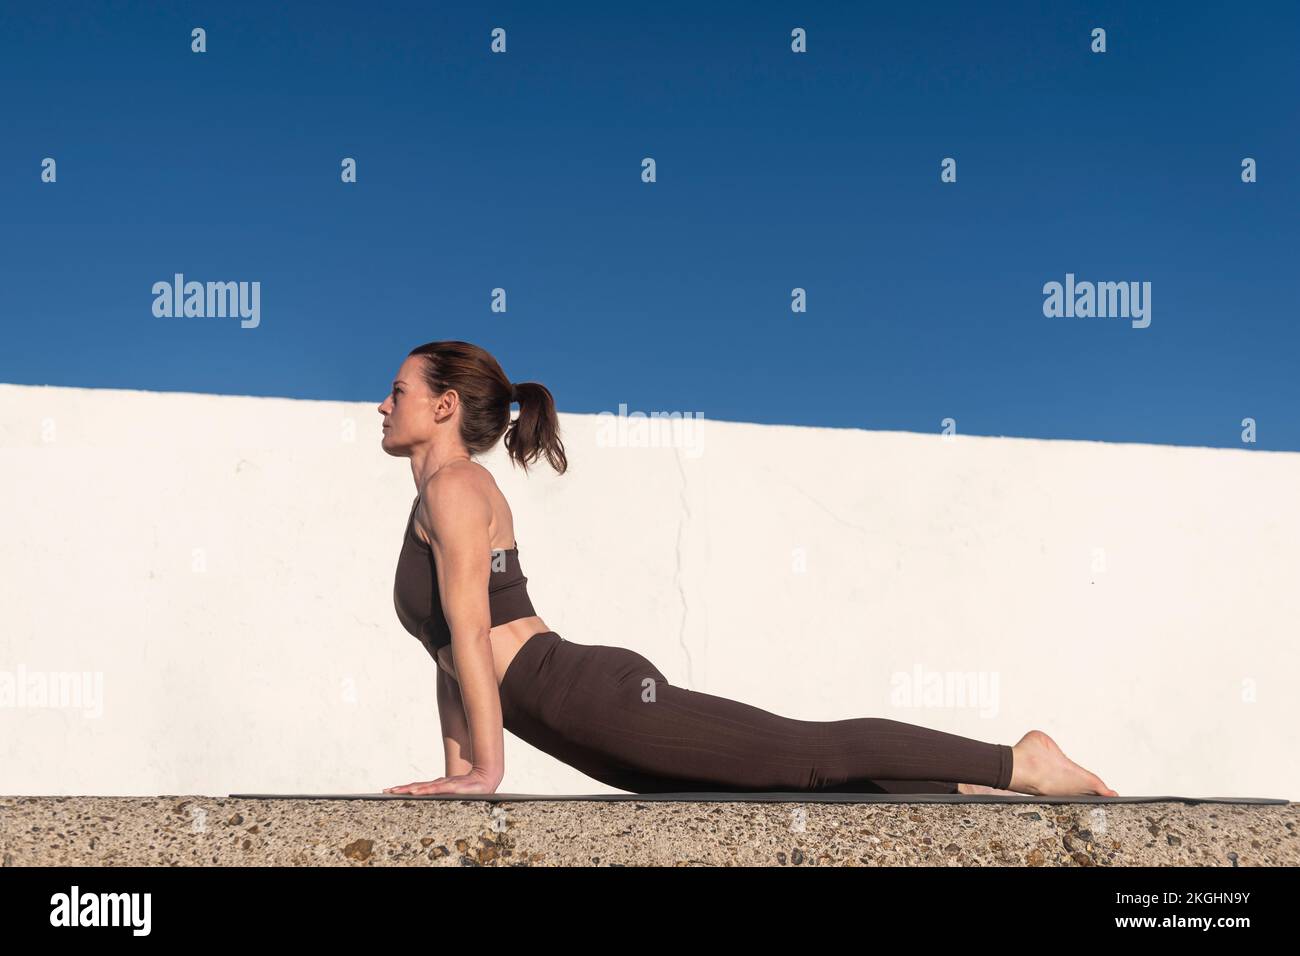 Una donna pratica yoga fuori su un tappeto facendo una posa stretching cobra. Concetto di sport e stile di vita sano. Foto Stock